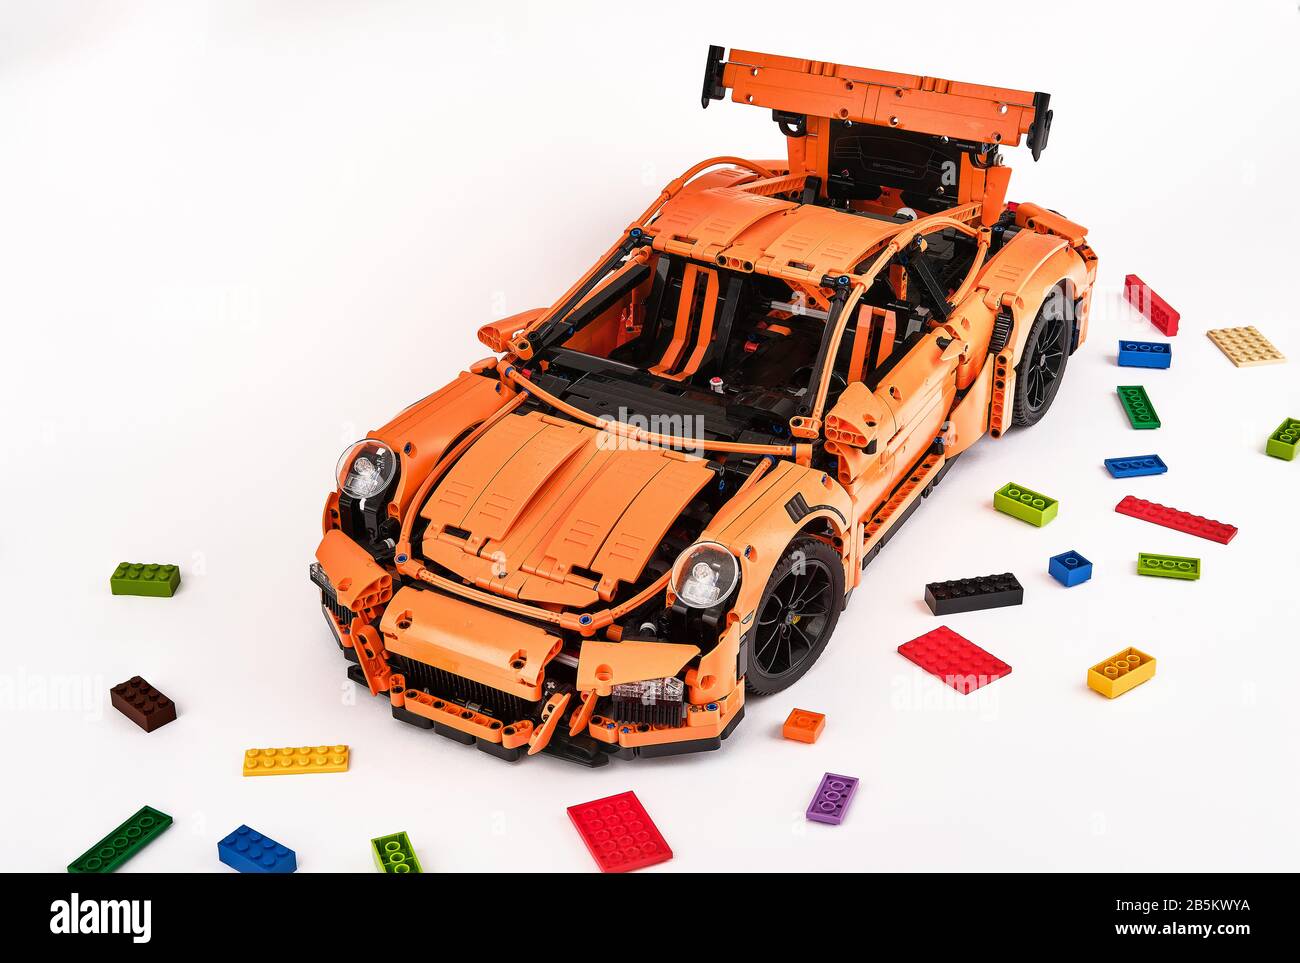 Différentes vues de la voiture LEGO Porsche GT 3 RS orange assemblée entourée de briques lego de rechange Banque D'Images